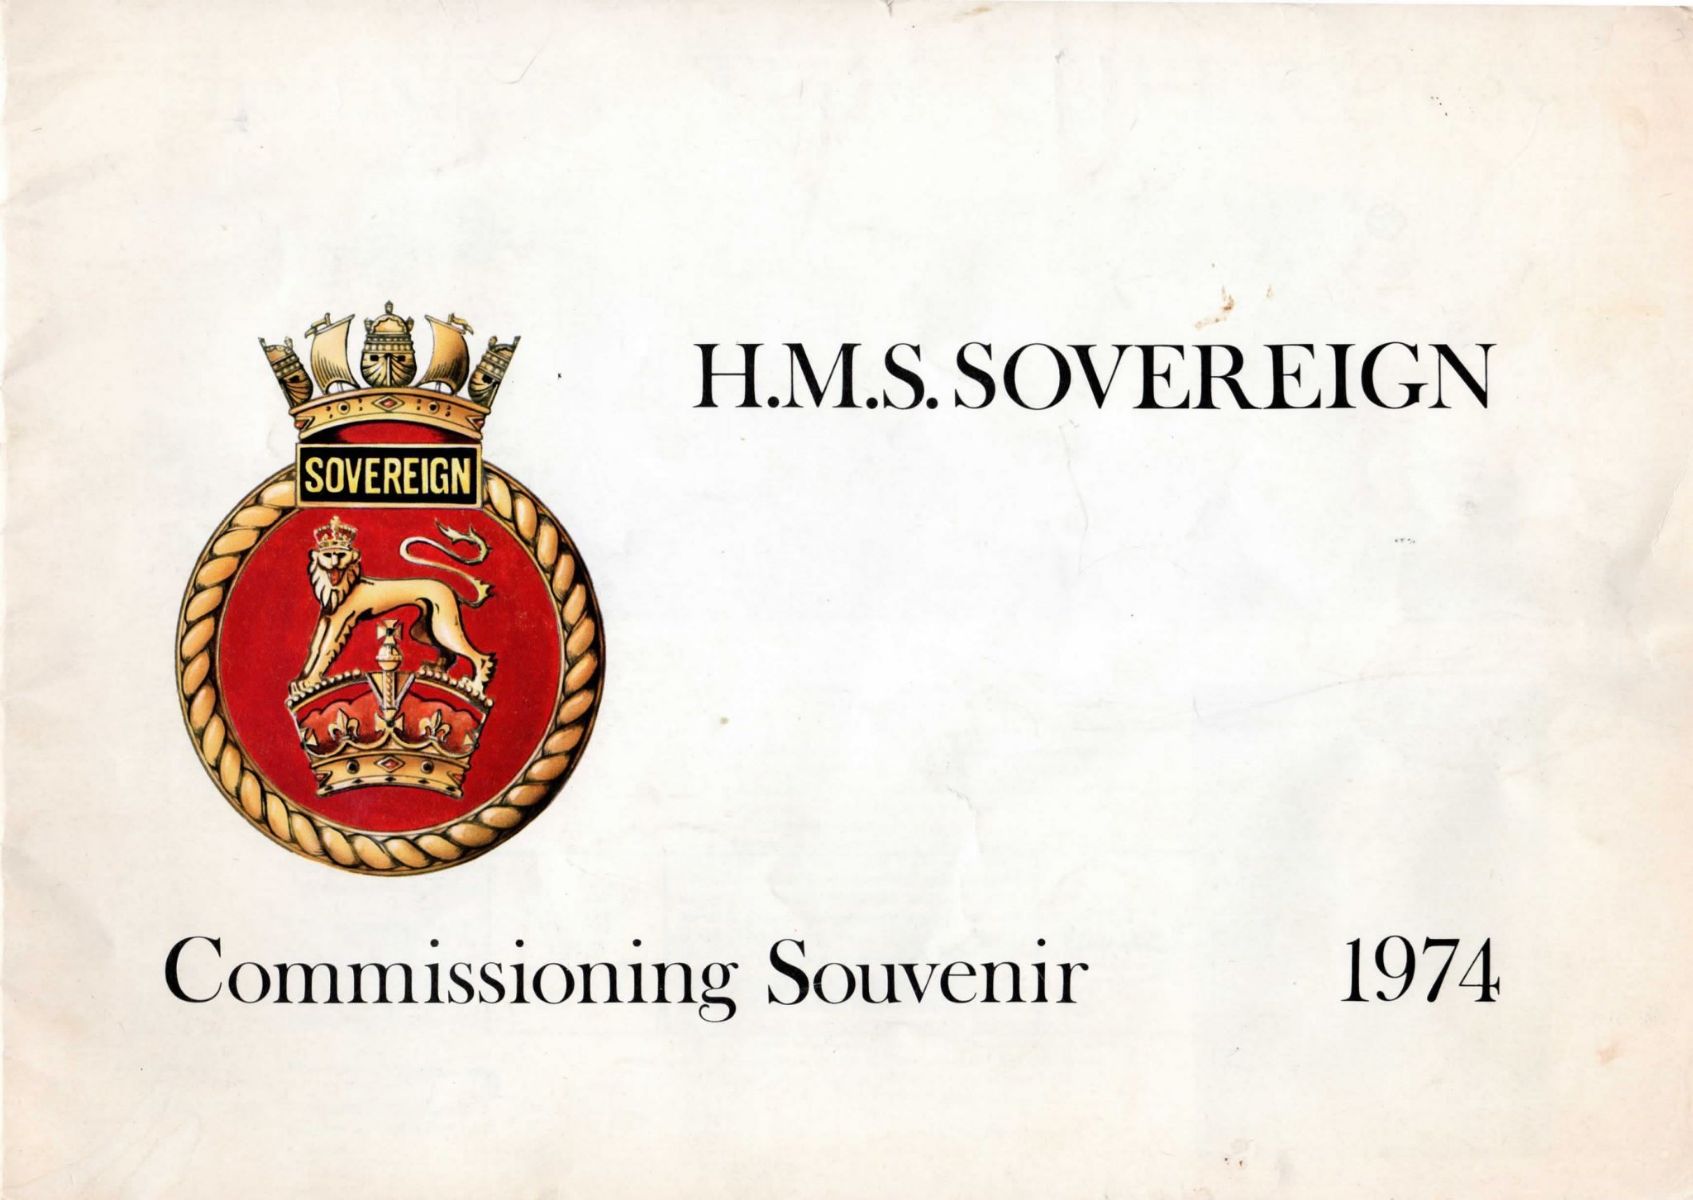 H.M.S. SOVEREIGN: Commissioning Souvenir